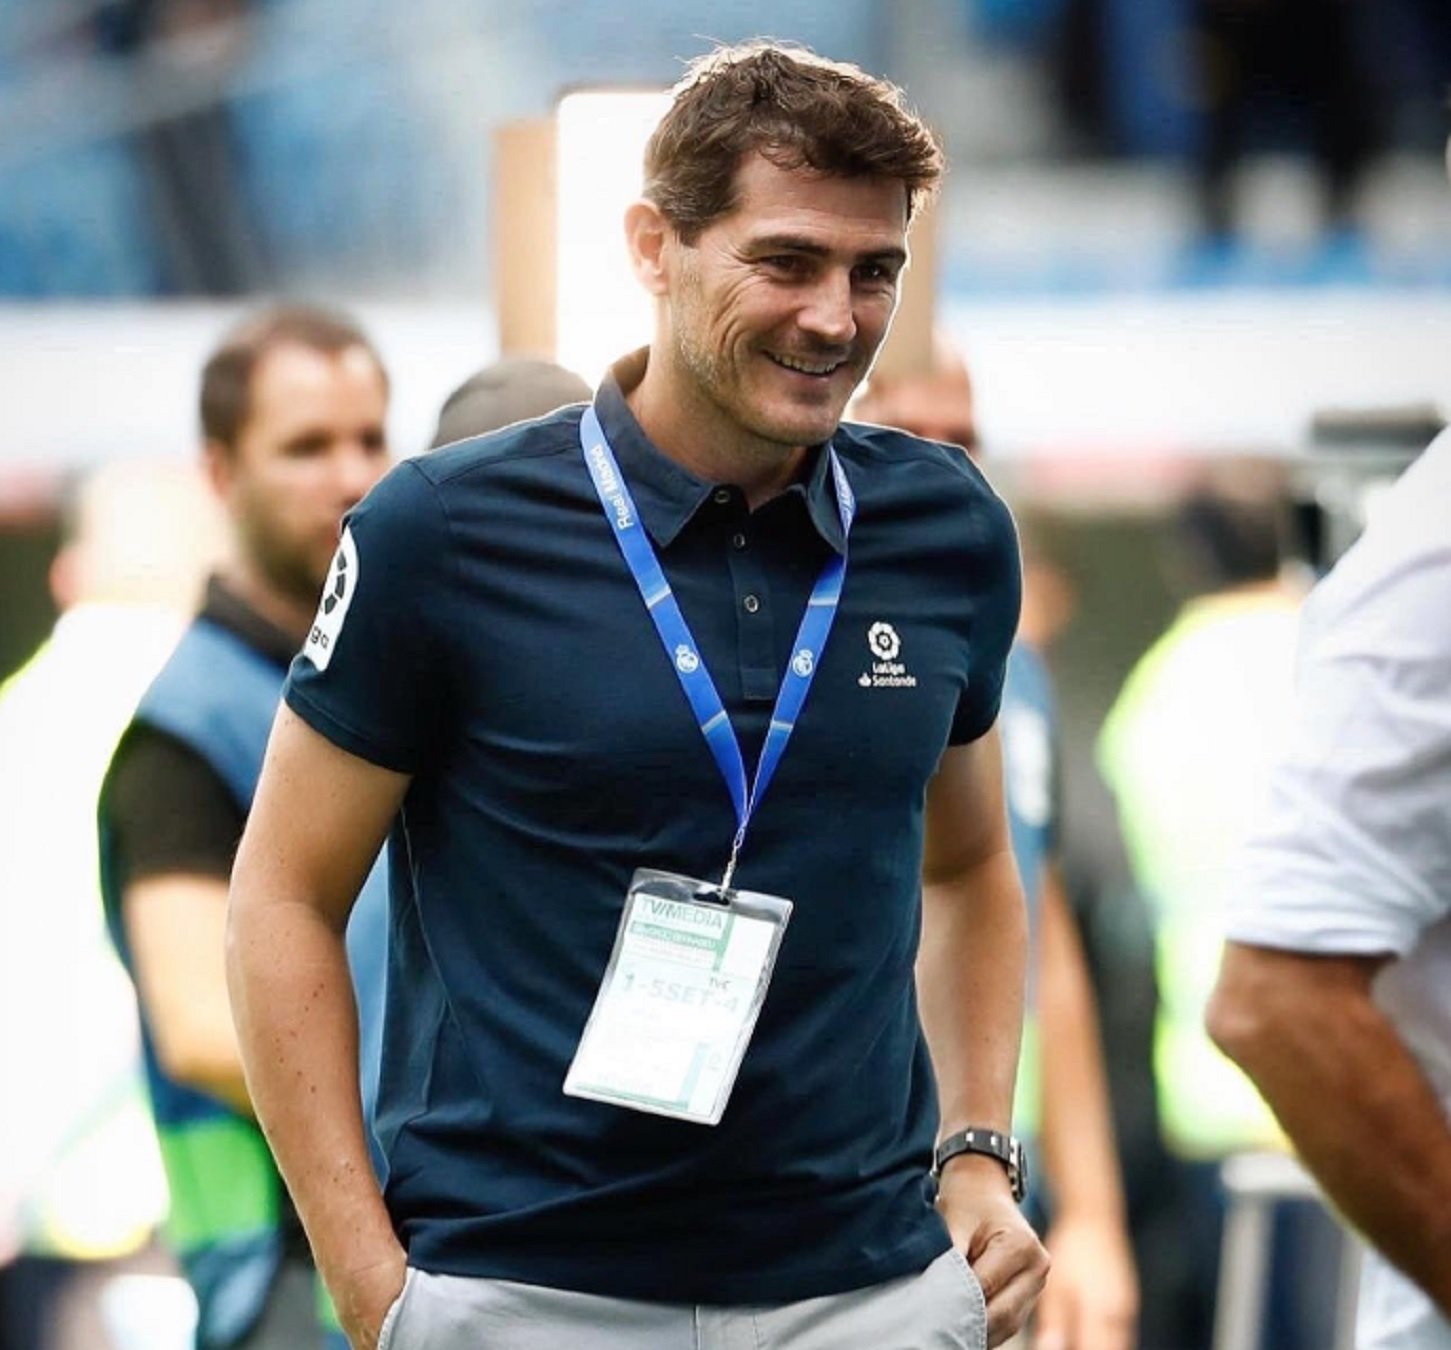 Revelen el vincle d'Iker Casillas amb el festaire d'Íñigo Onieva